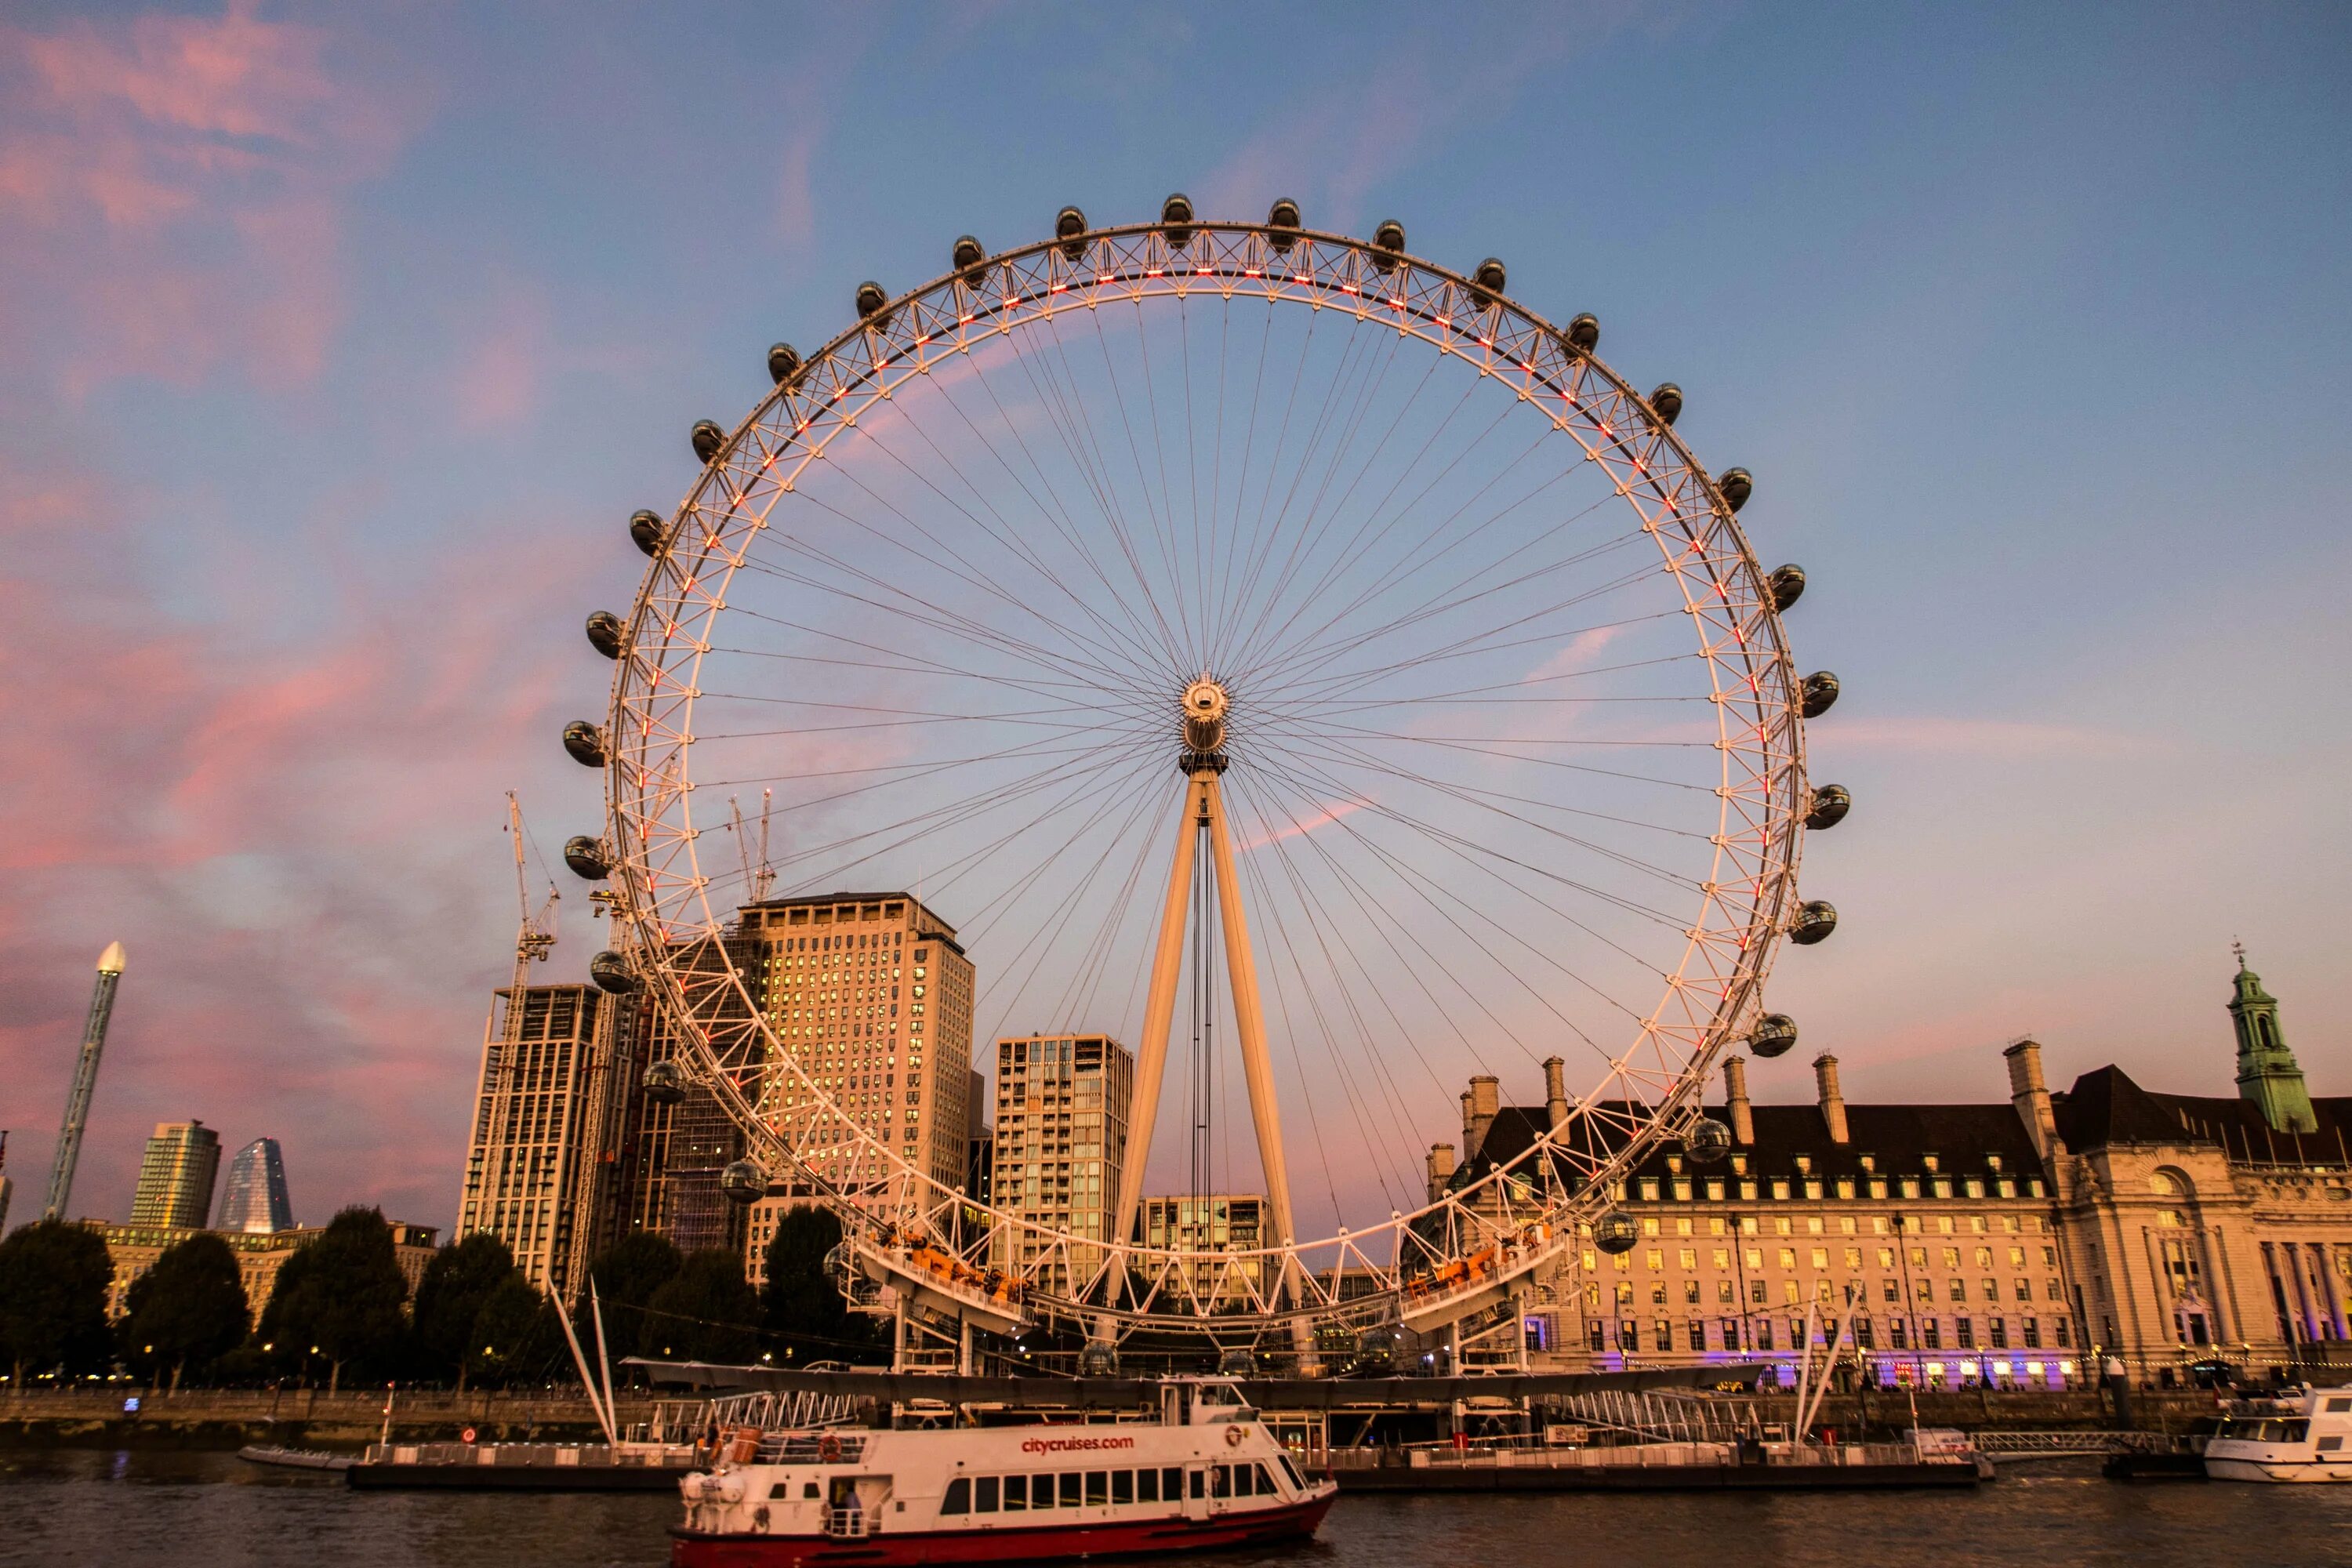 Лондонский глаз London Eye. Лондонский глаз и Тауэрский мост. Биг Бен и колесо обозрения в Лондоне. Достопримечательности Лондона «Лондонский глаз» (London Eye).